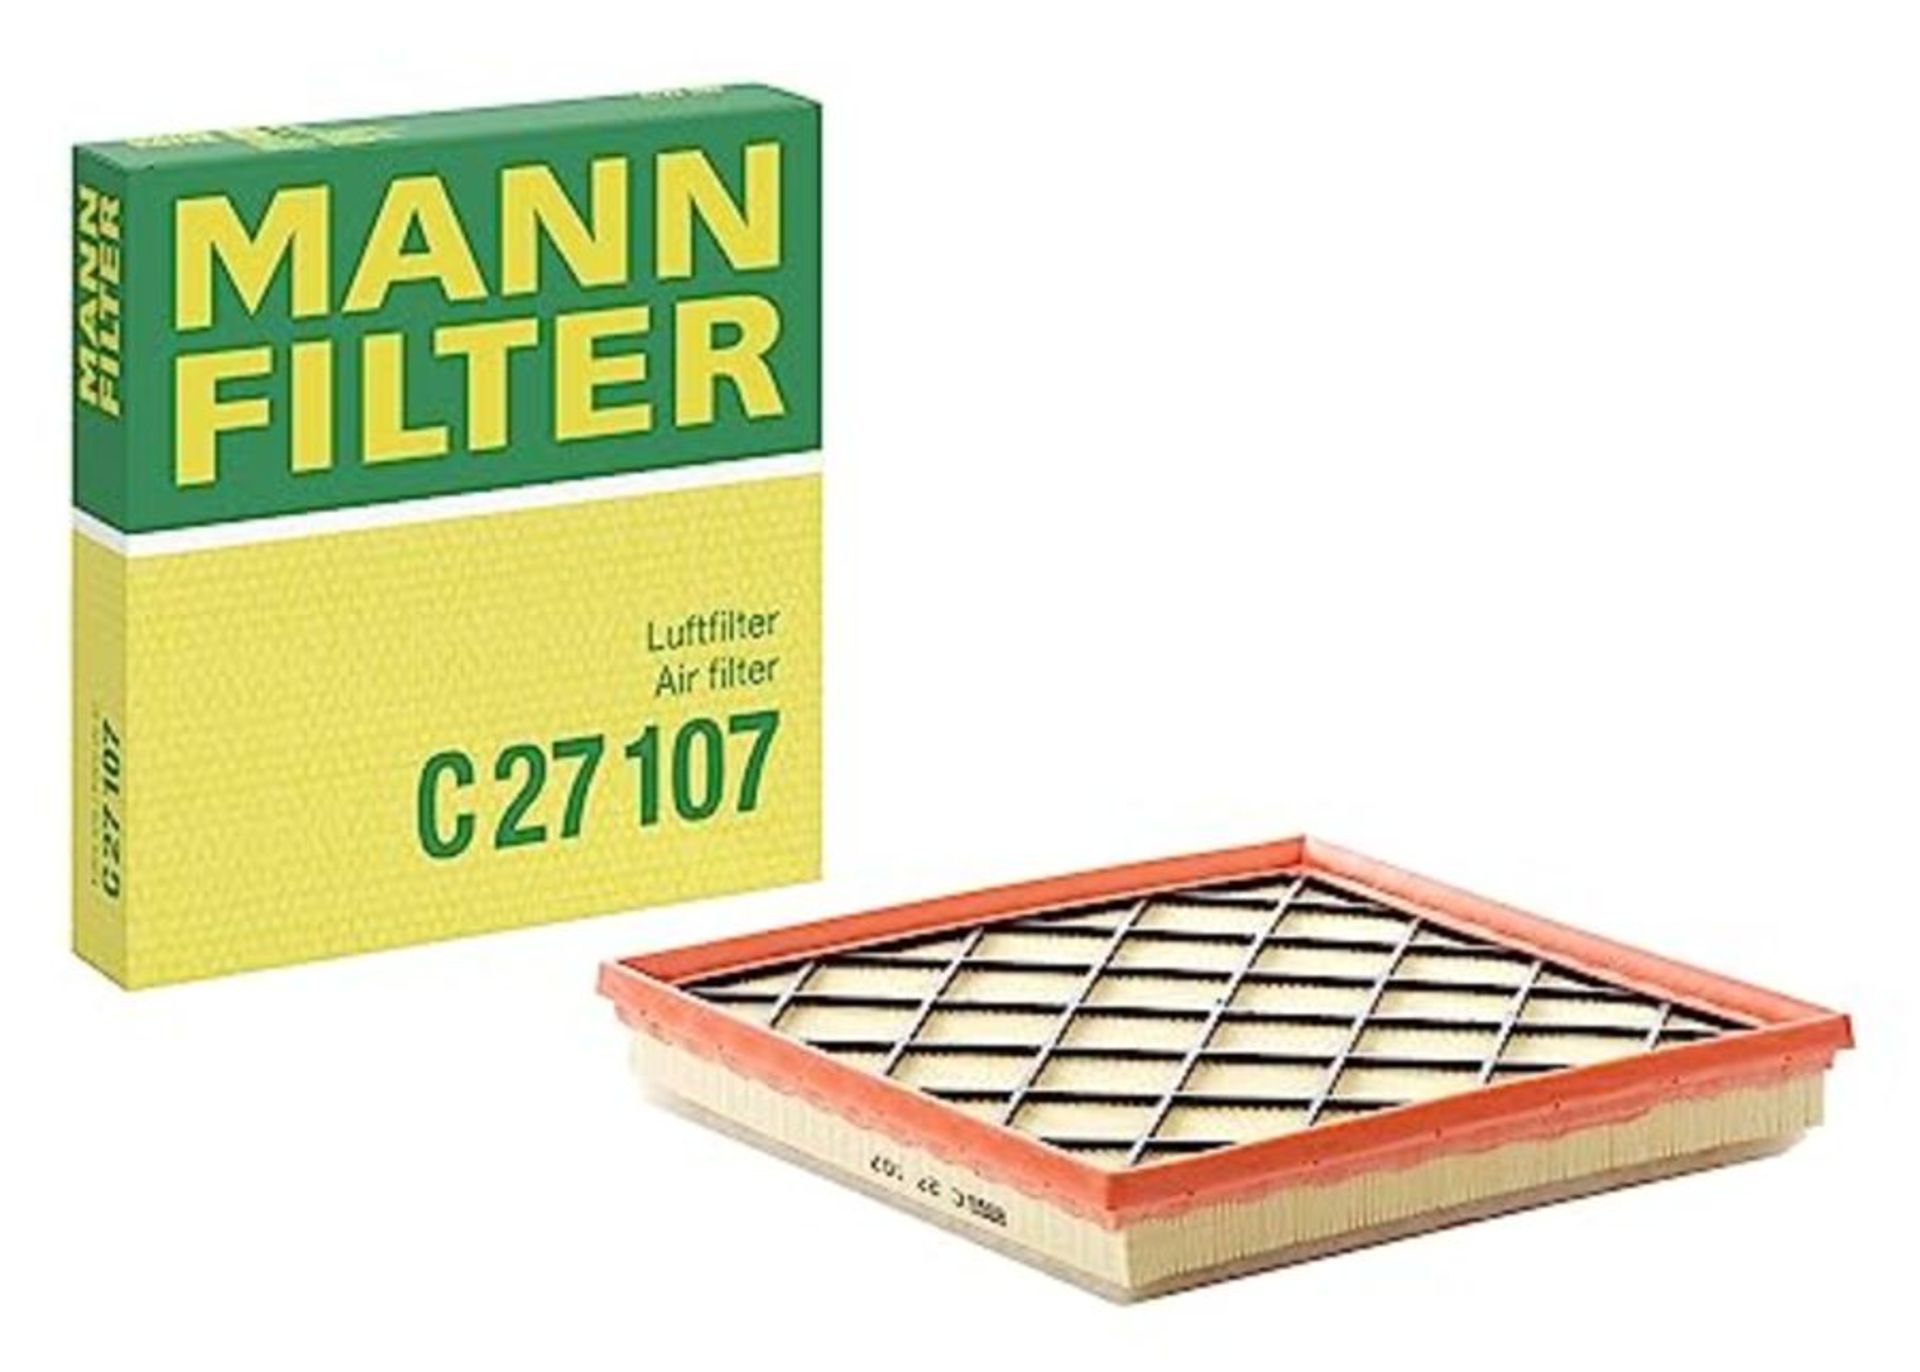 MANN-FILTER C 27 107 Air Filter  For Passenger Cars - Image 4 of 6